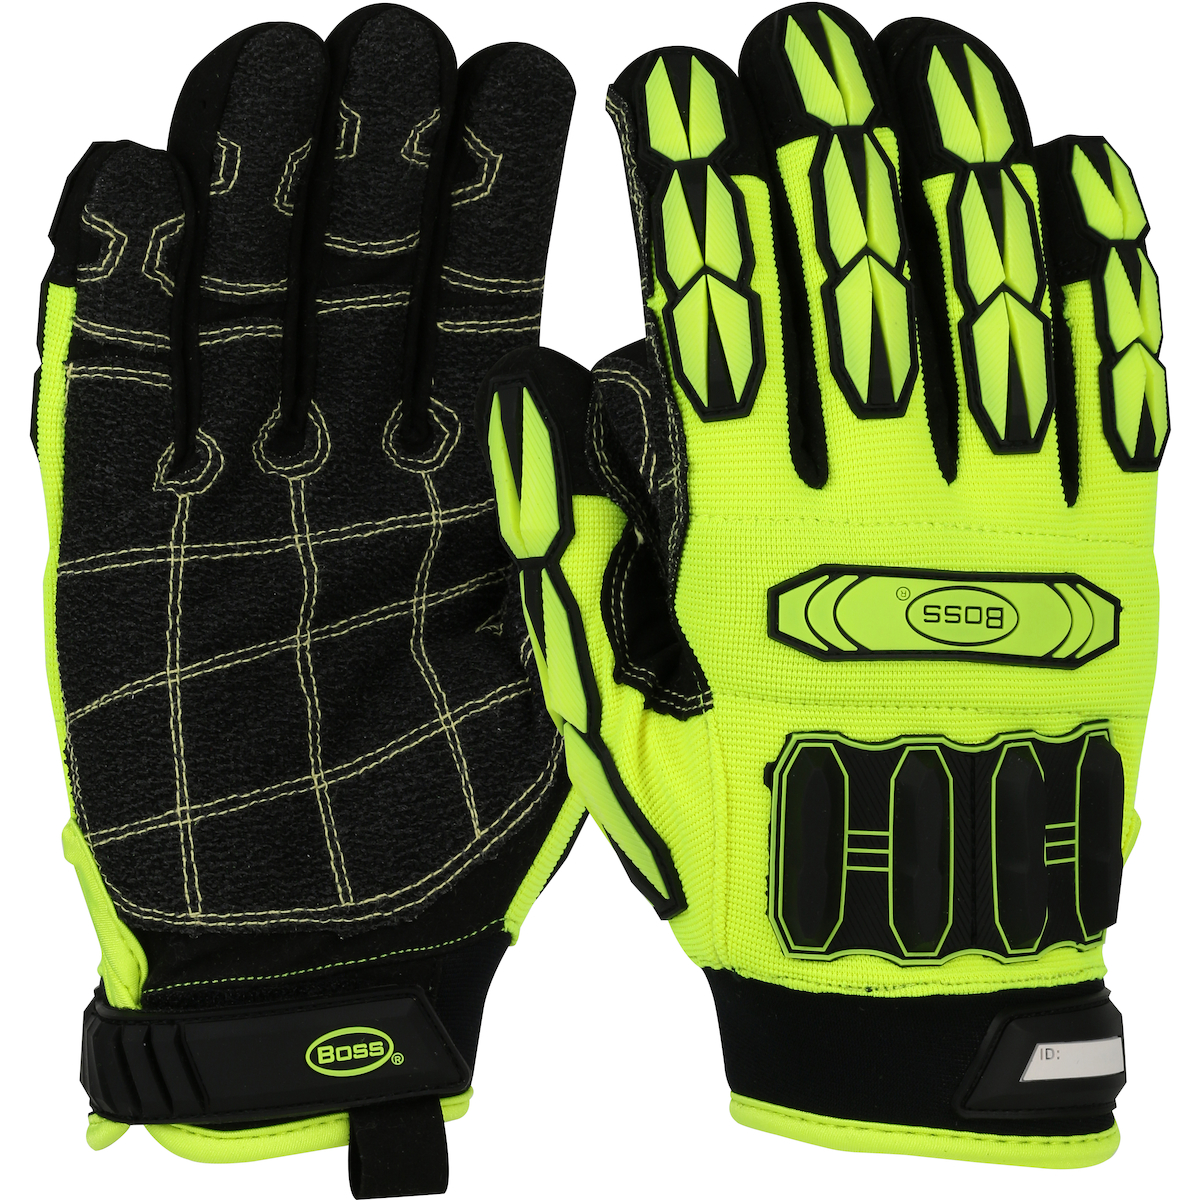 87-1JM750 PIP® Boss® Impact Gloves 